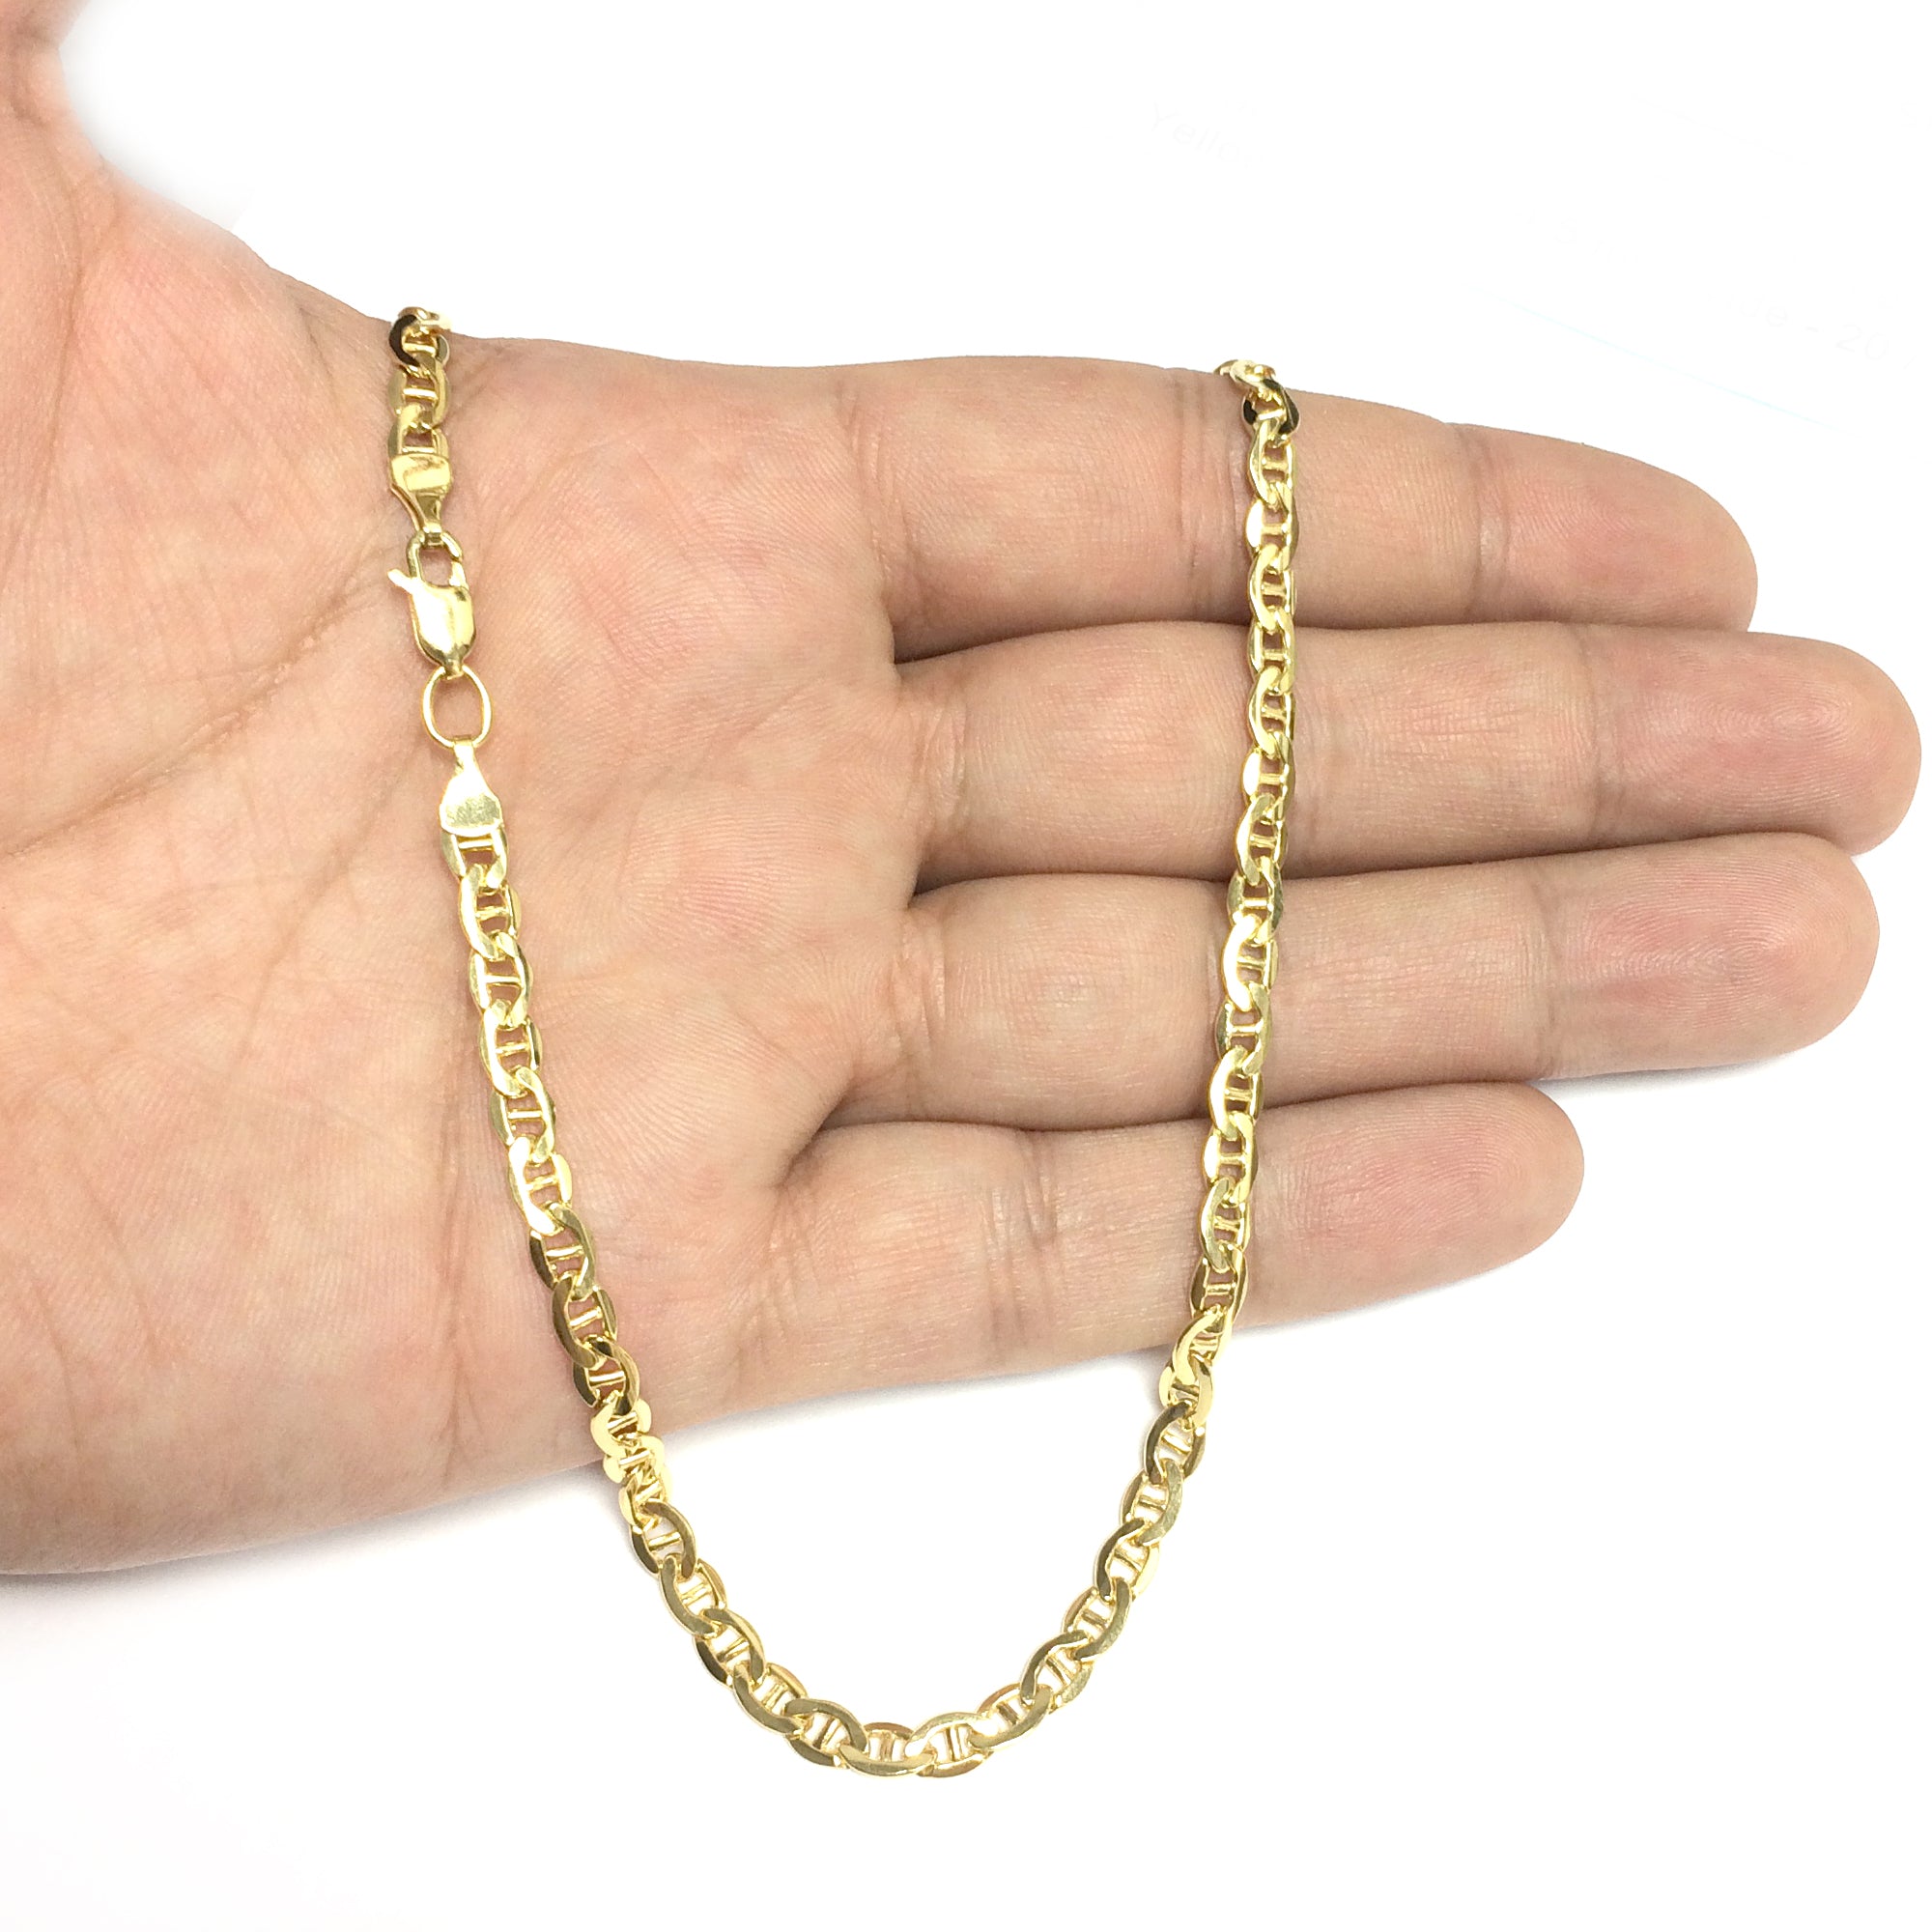 14K gul guldfyldt Solid Mariner Chain Halskæde, 4,5 mm brede fine designersmykker til mænd og kvinder